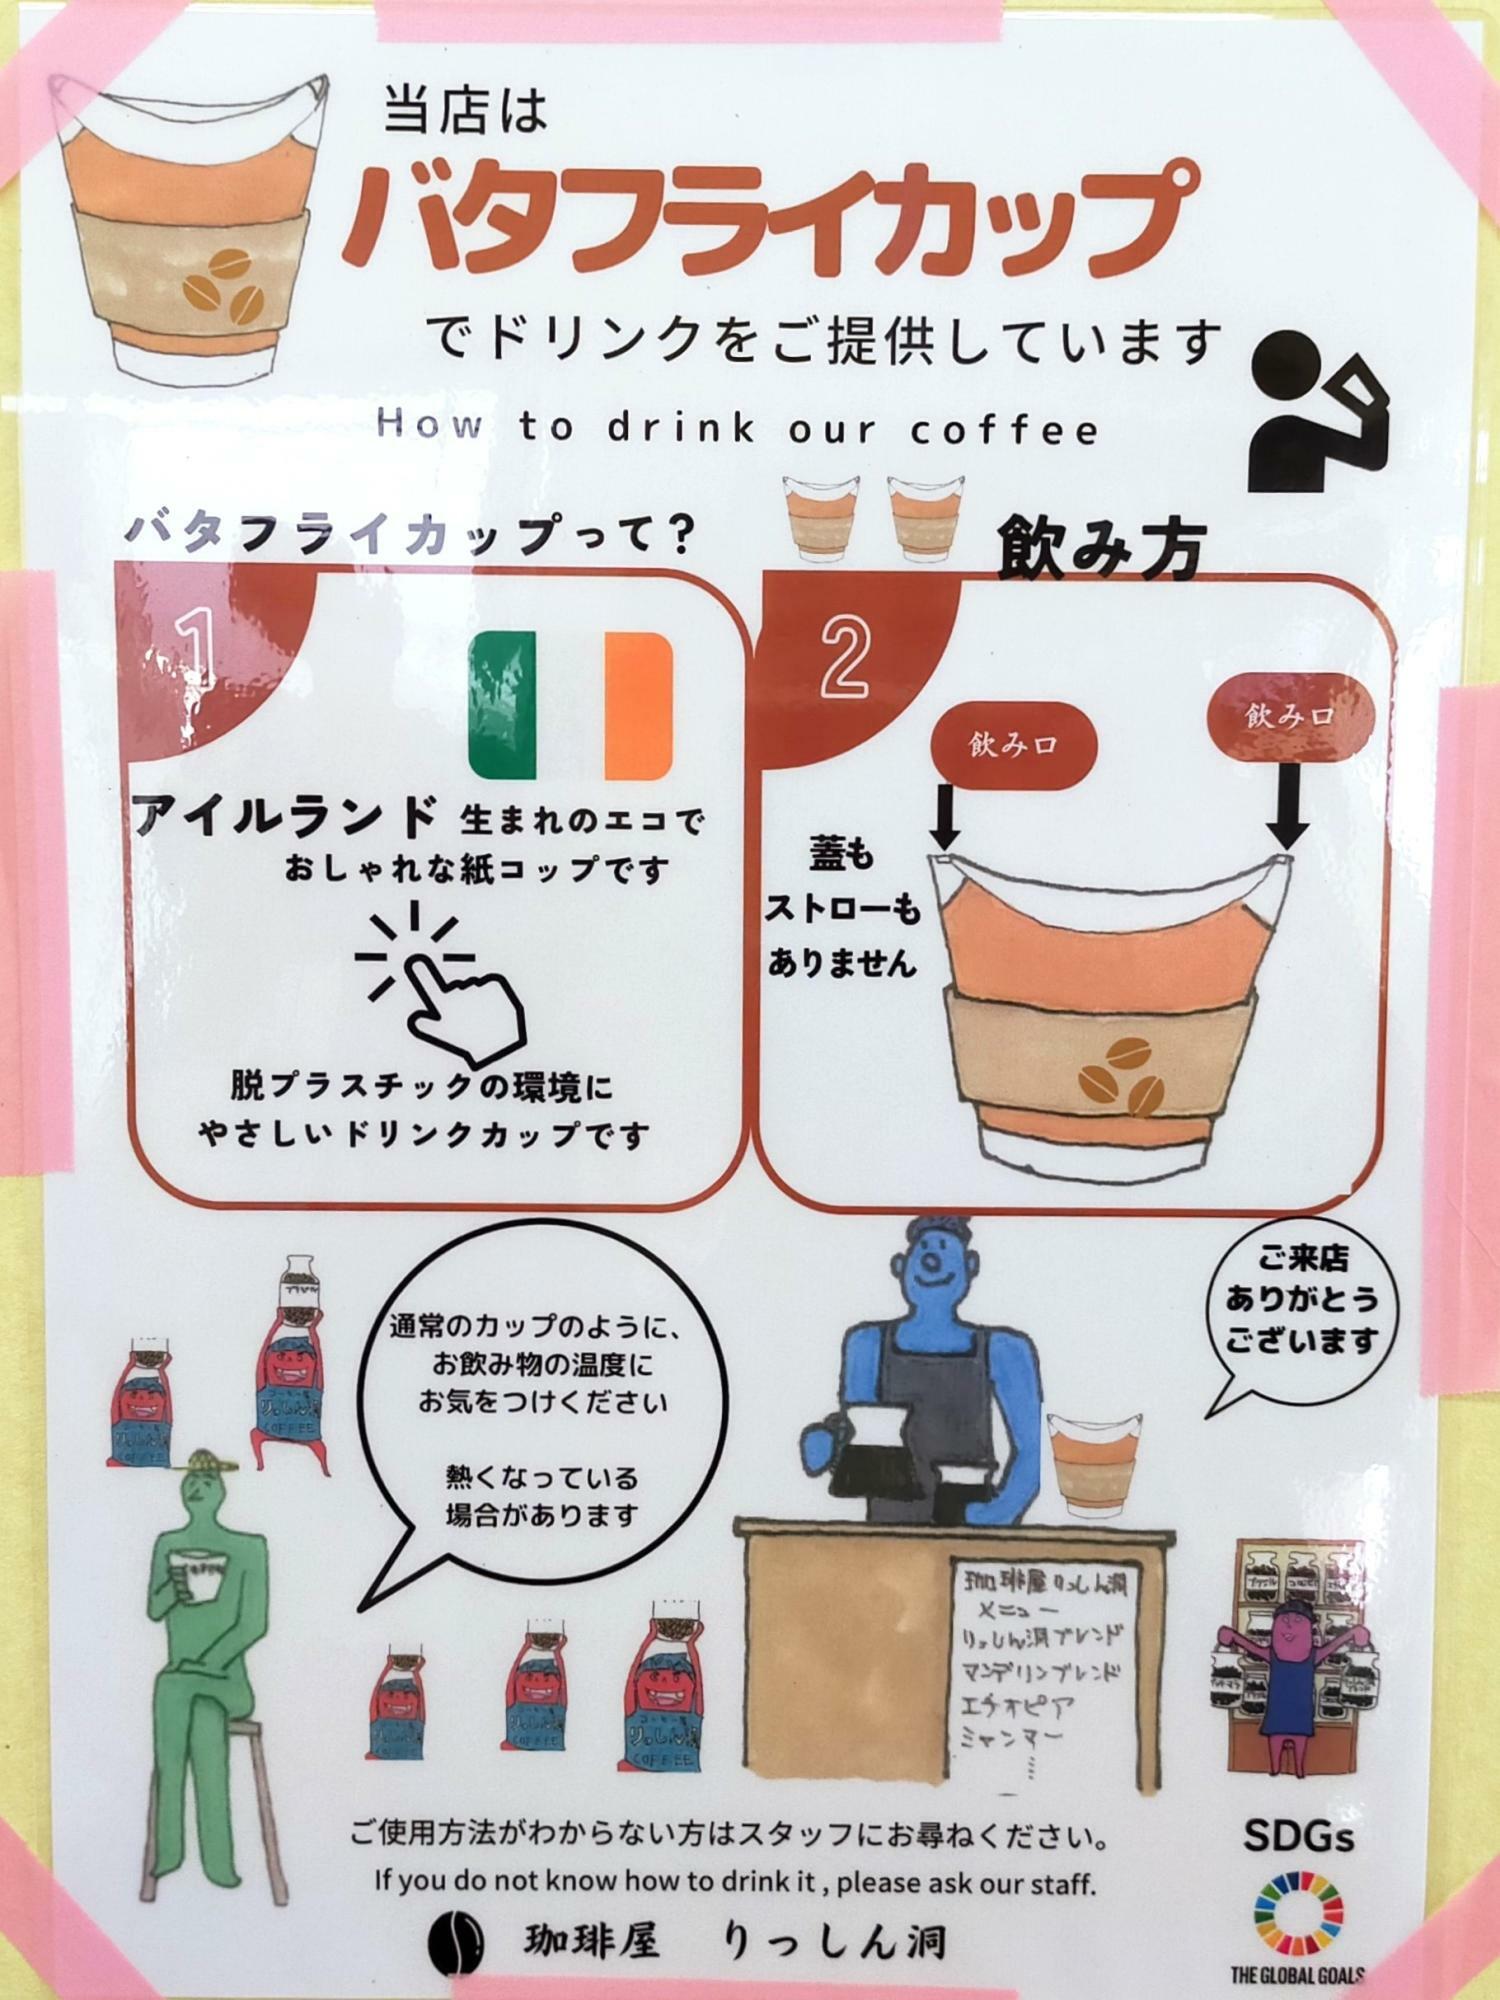 事業所のメンバー(中村氏)が描かれた手書きのPOP。あたたかみのあるイラストでカップの特徴が表現されています。